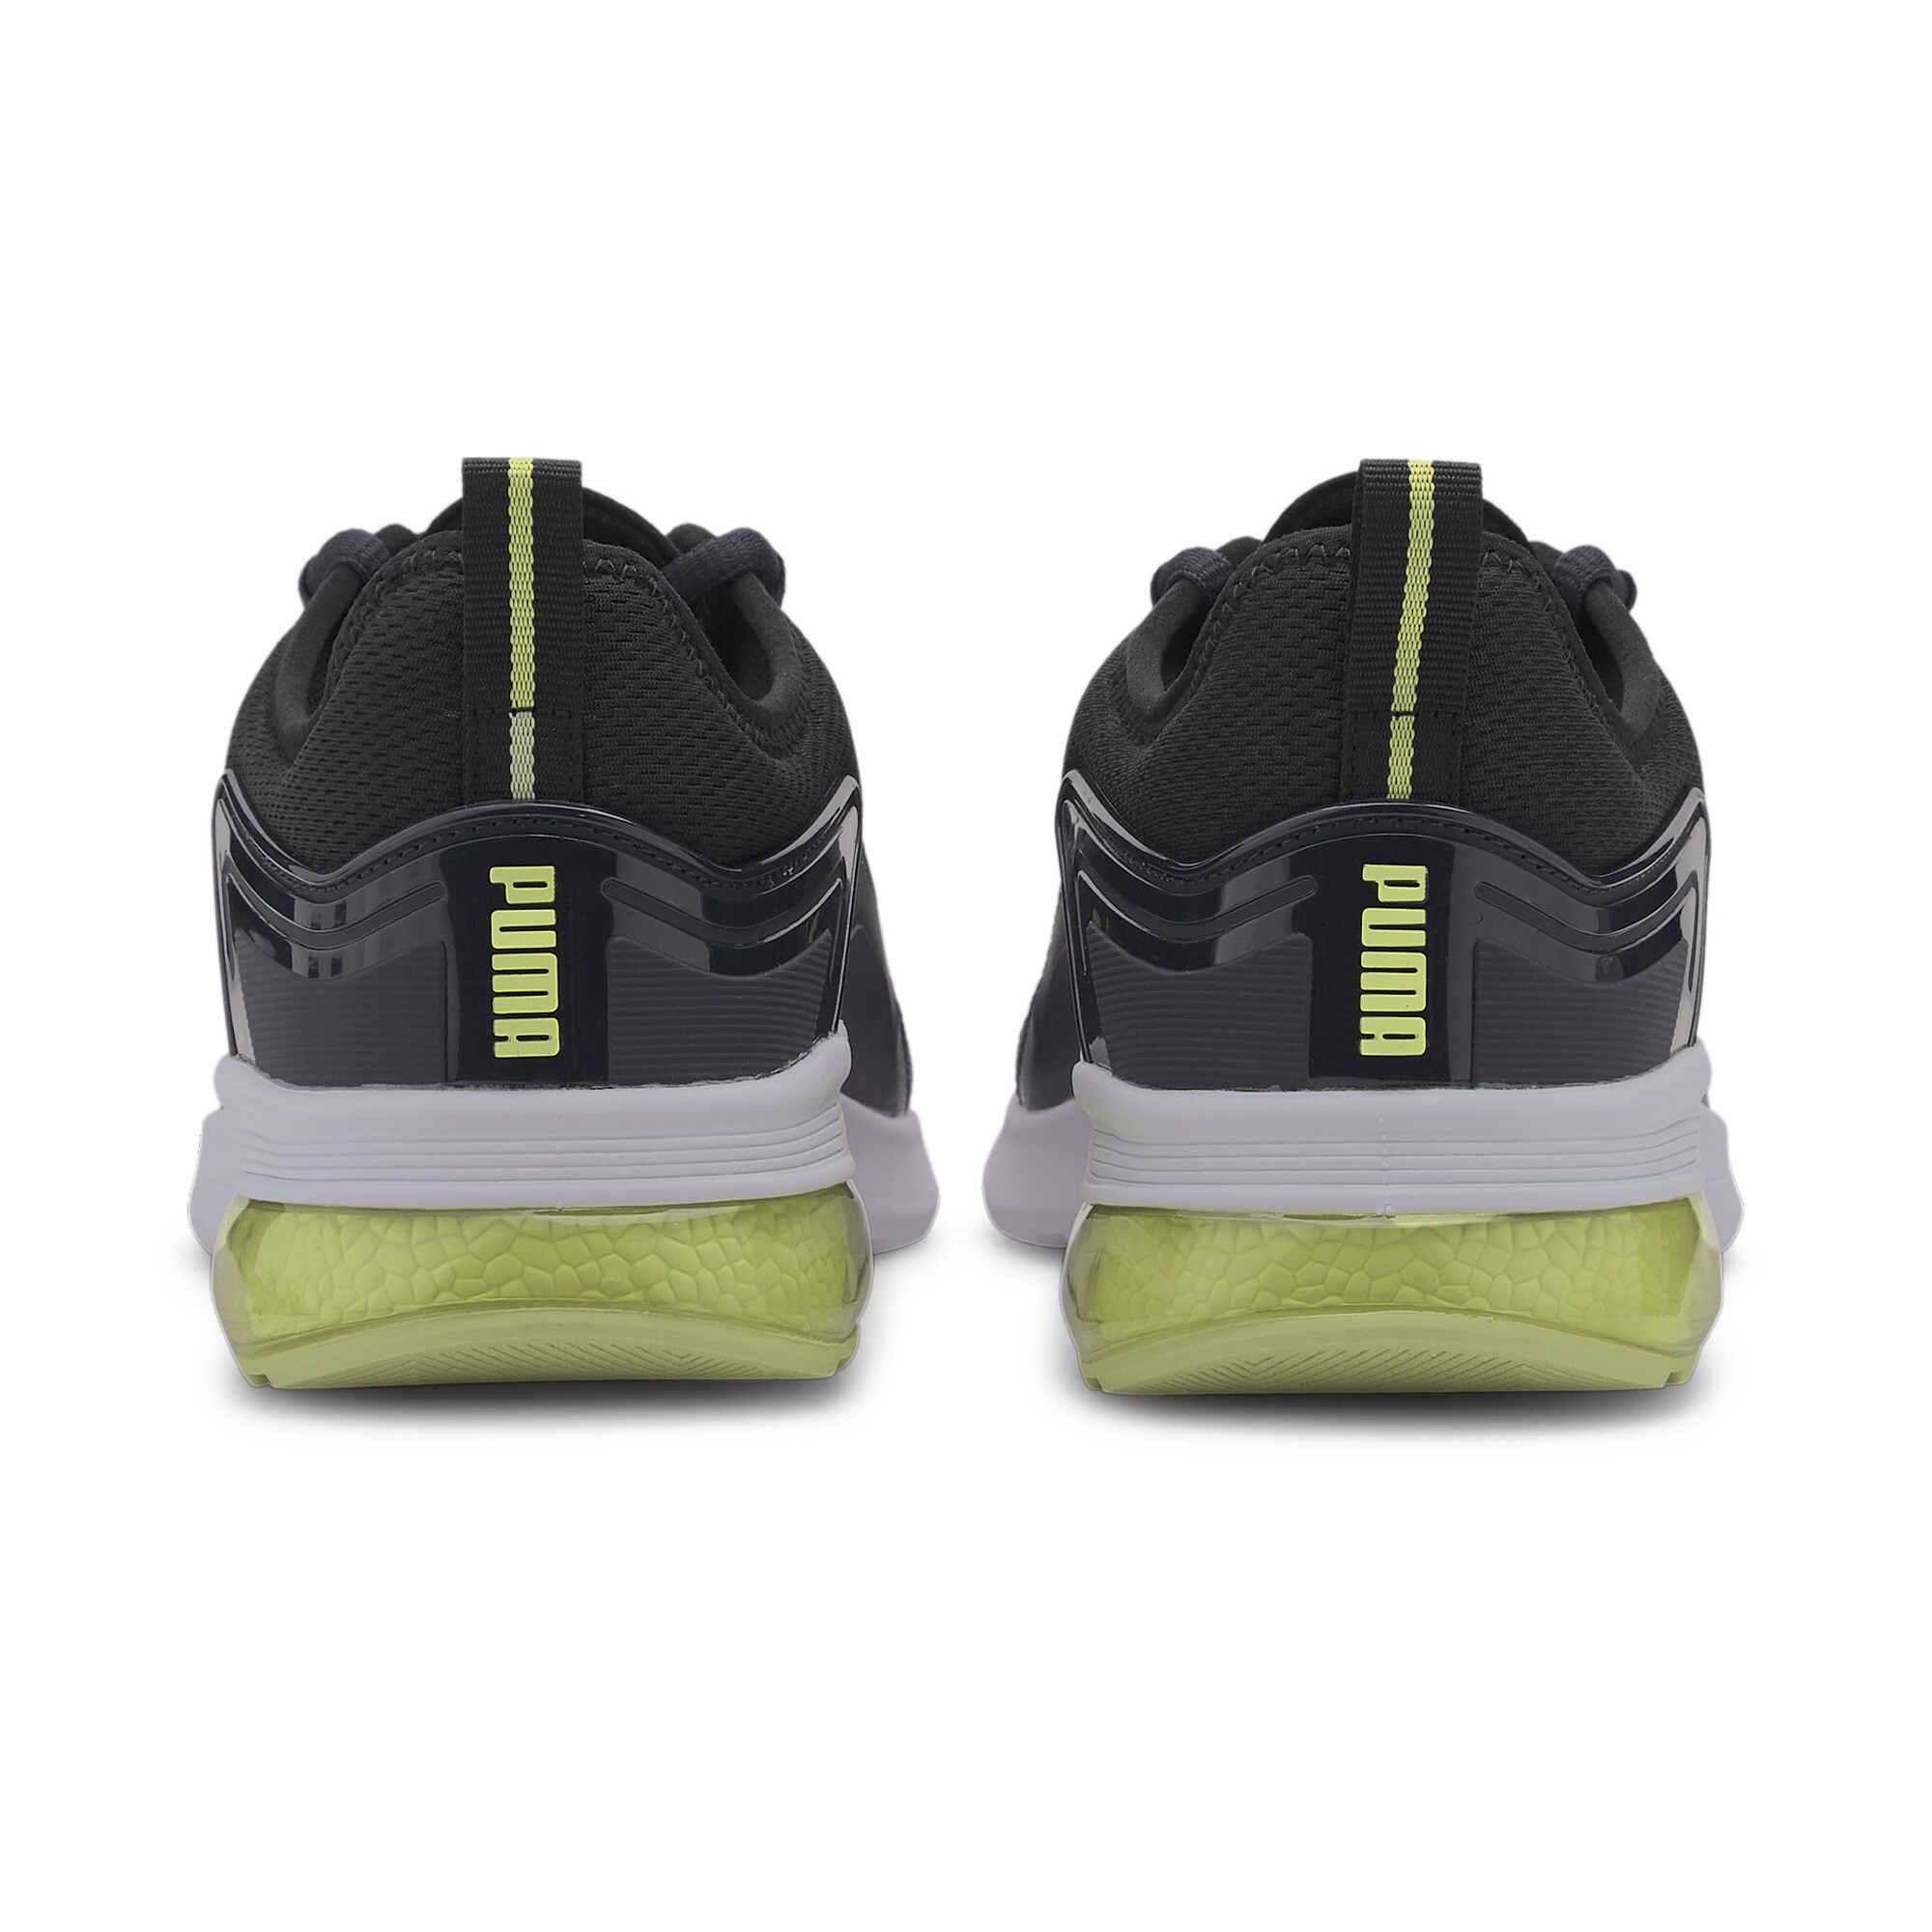 Indexbild 15 - PUMA Electron Street Era Sneaker Unisex Schuhe Basics Neu